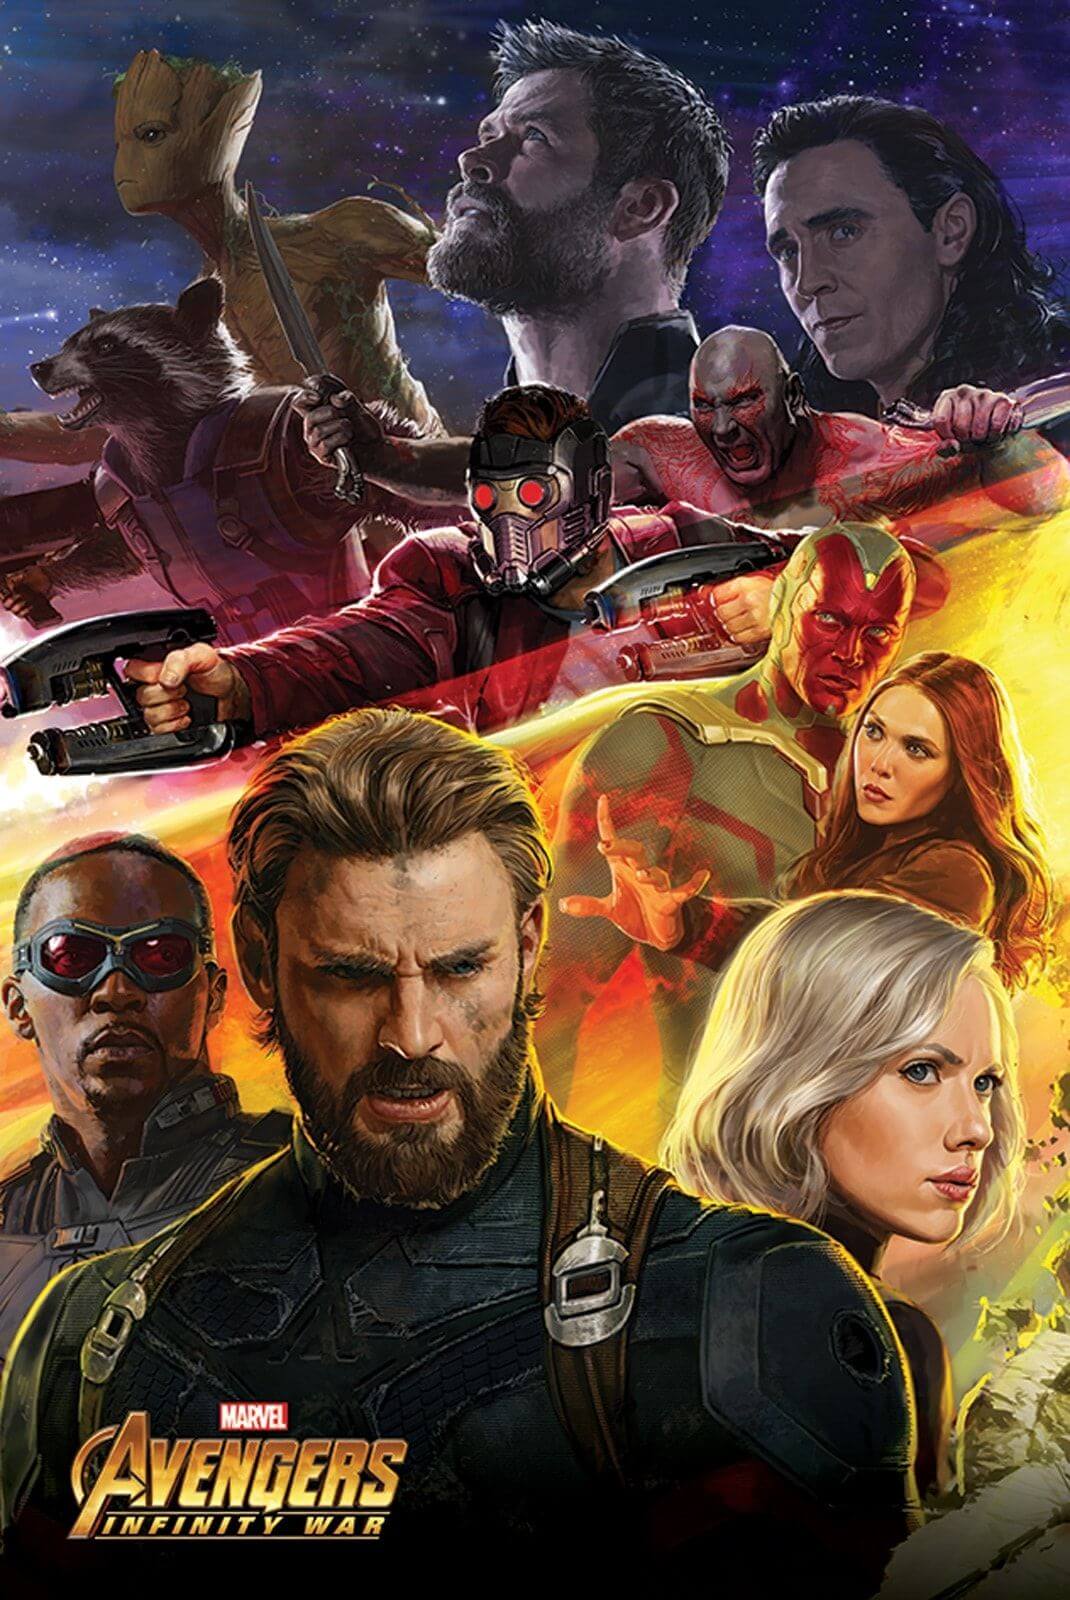 Plakat przedstawia bohaterów filmu Avengers Infinity War